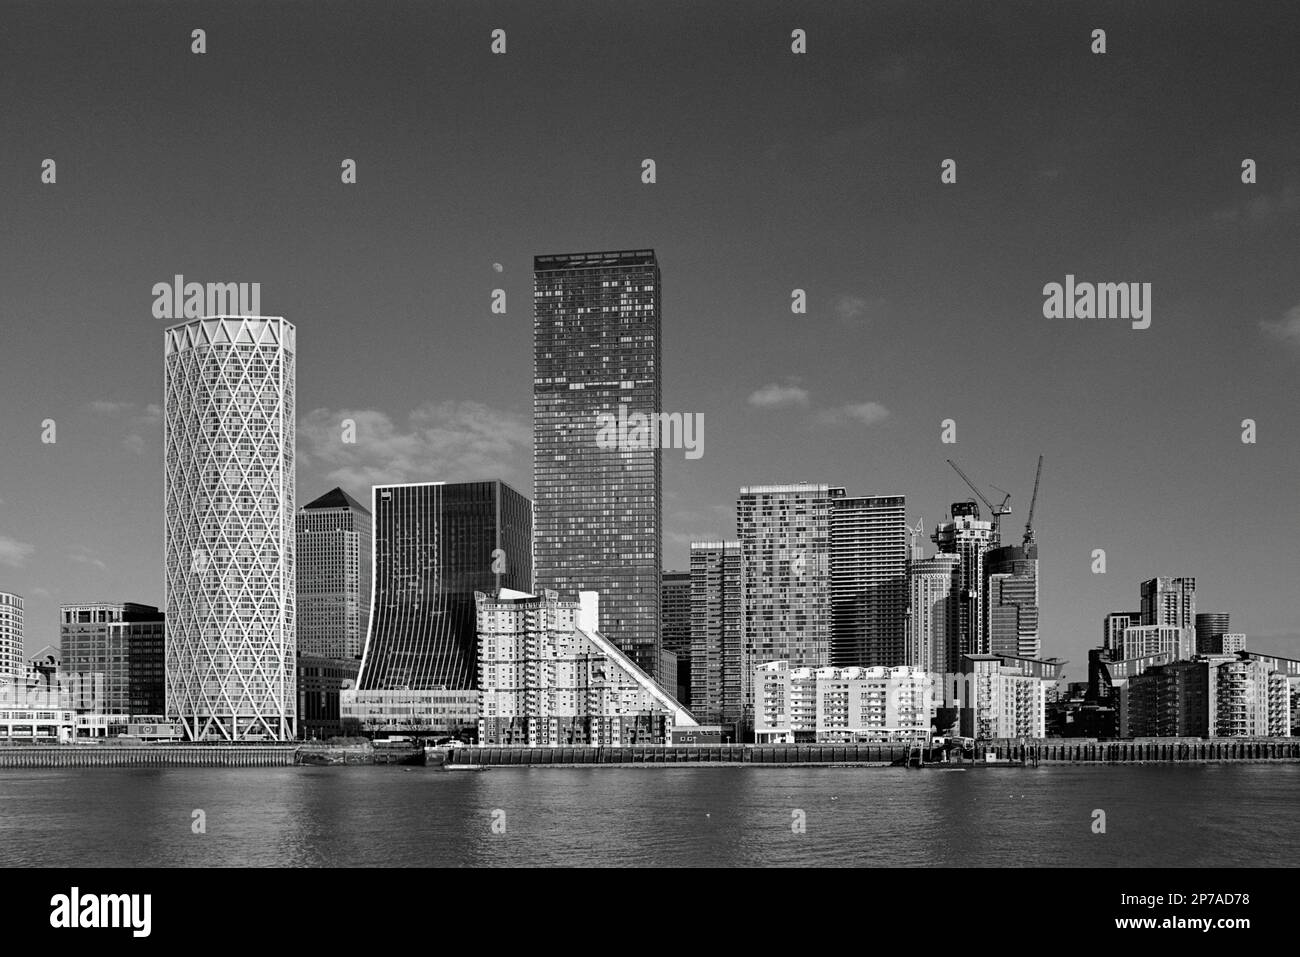 Vue sur Canary Wharf, Isle of Dogs, Londres, en monochrome, vue depuis la rive sud de la Tamise Banque D'Images